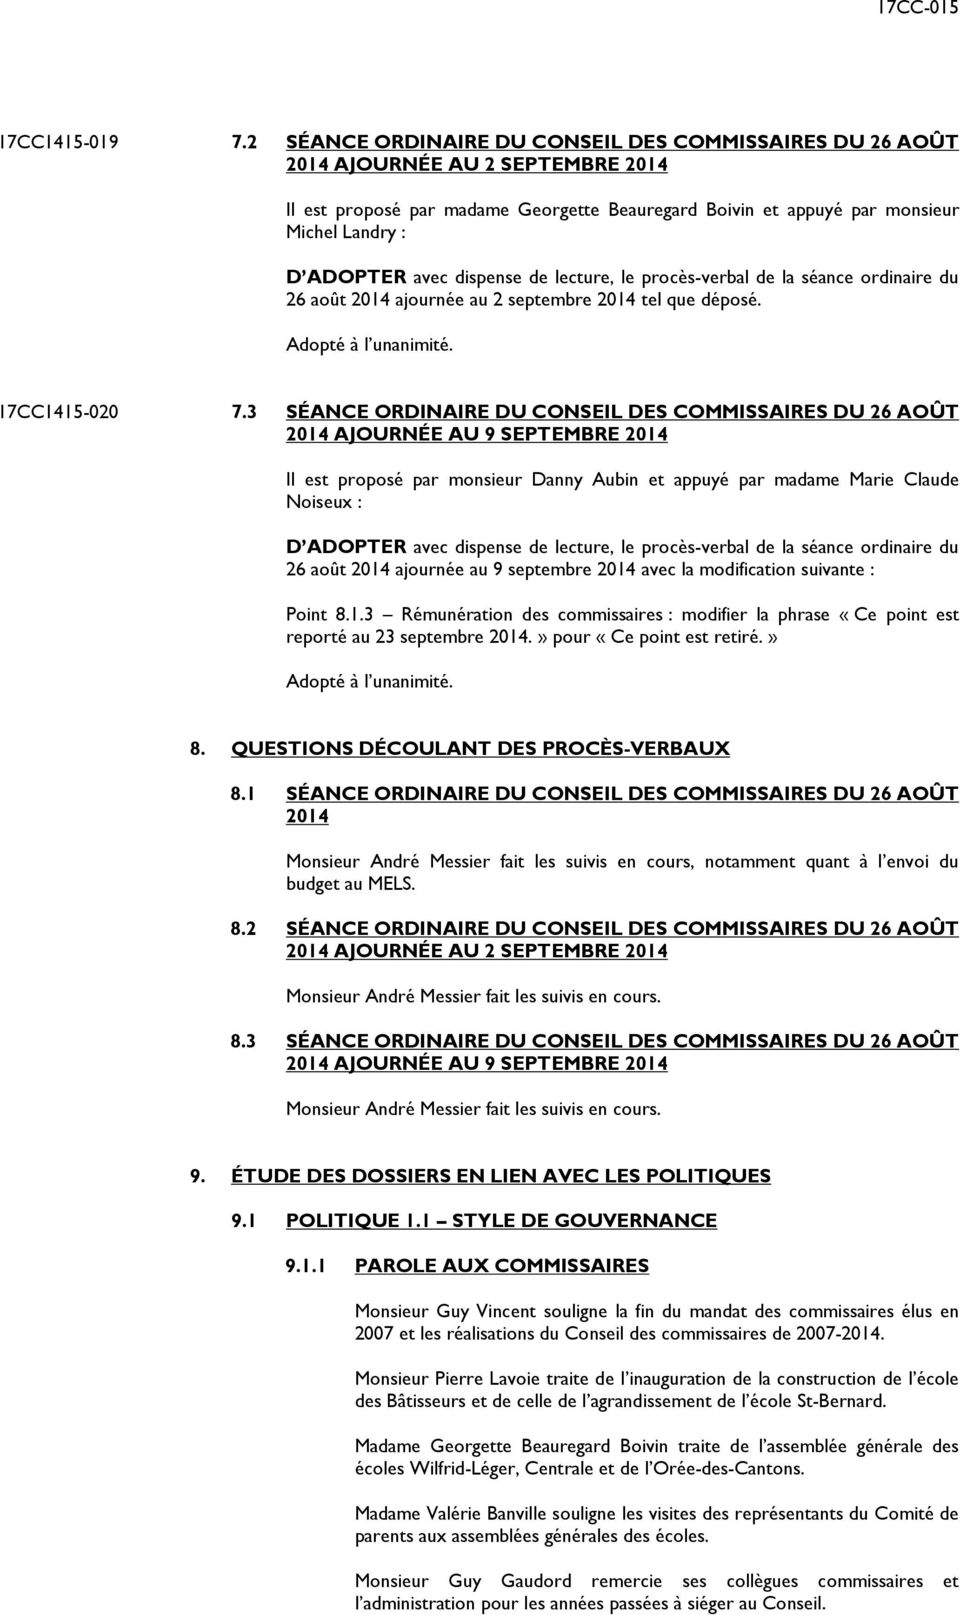 dispense de lecture, le procès-verbal de la séance ordinaire du 26 août 2014 ajournée au 2 septembre 2014 tel que déposé. 17CC1415-020 7.